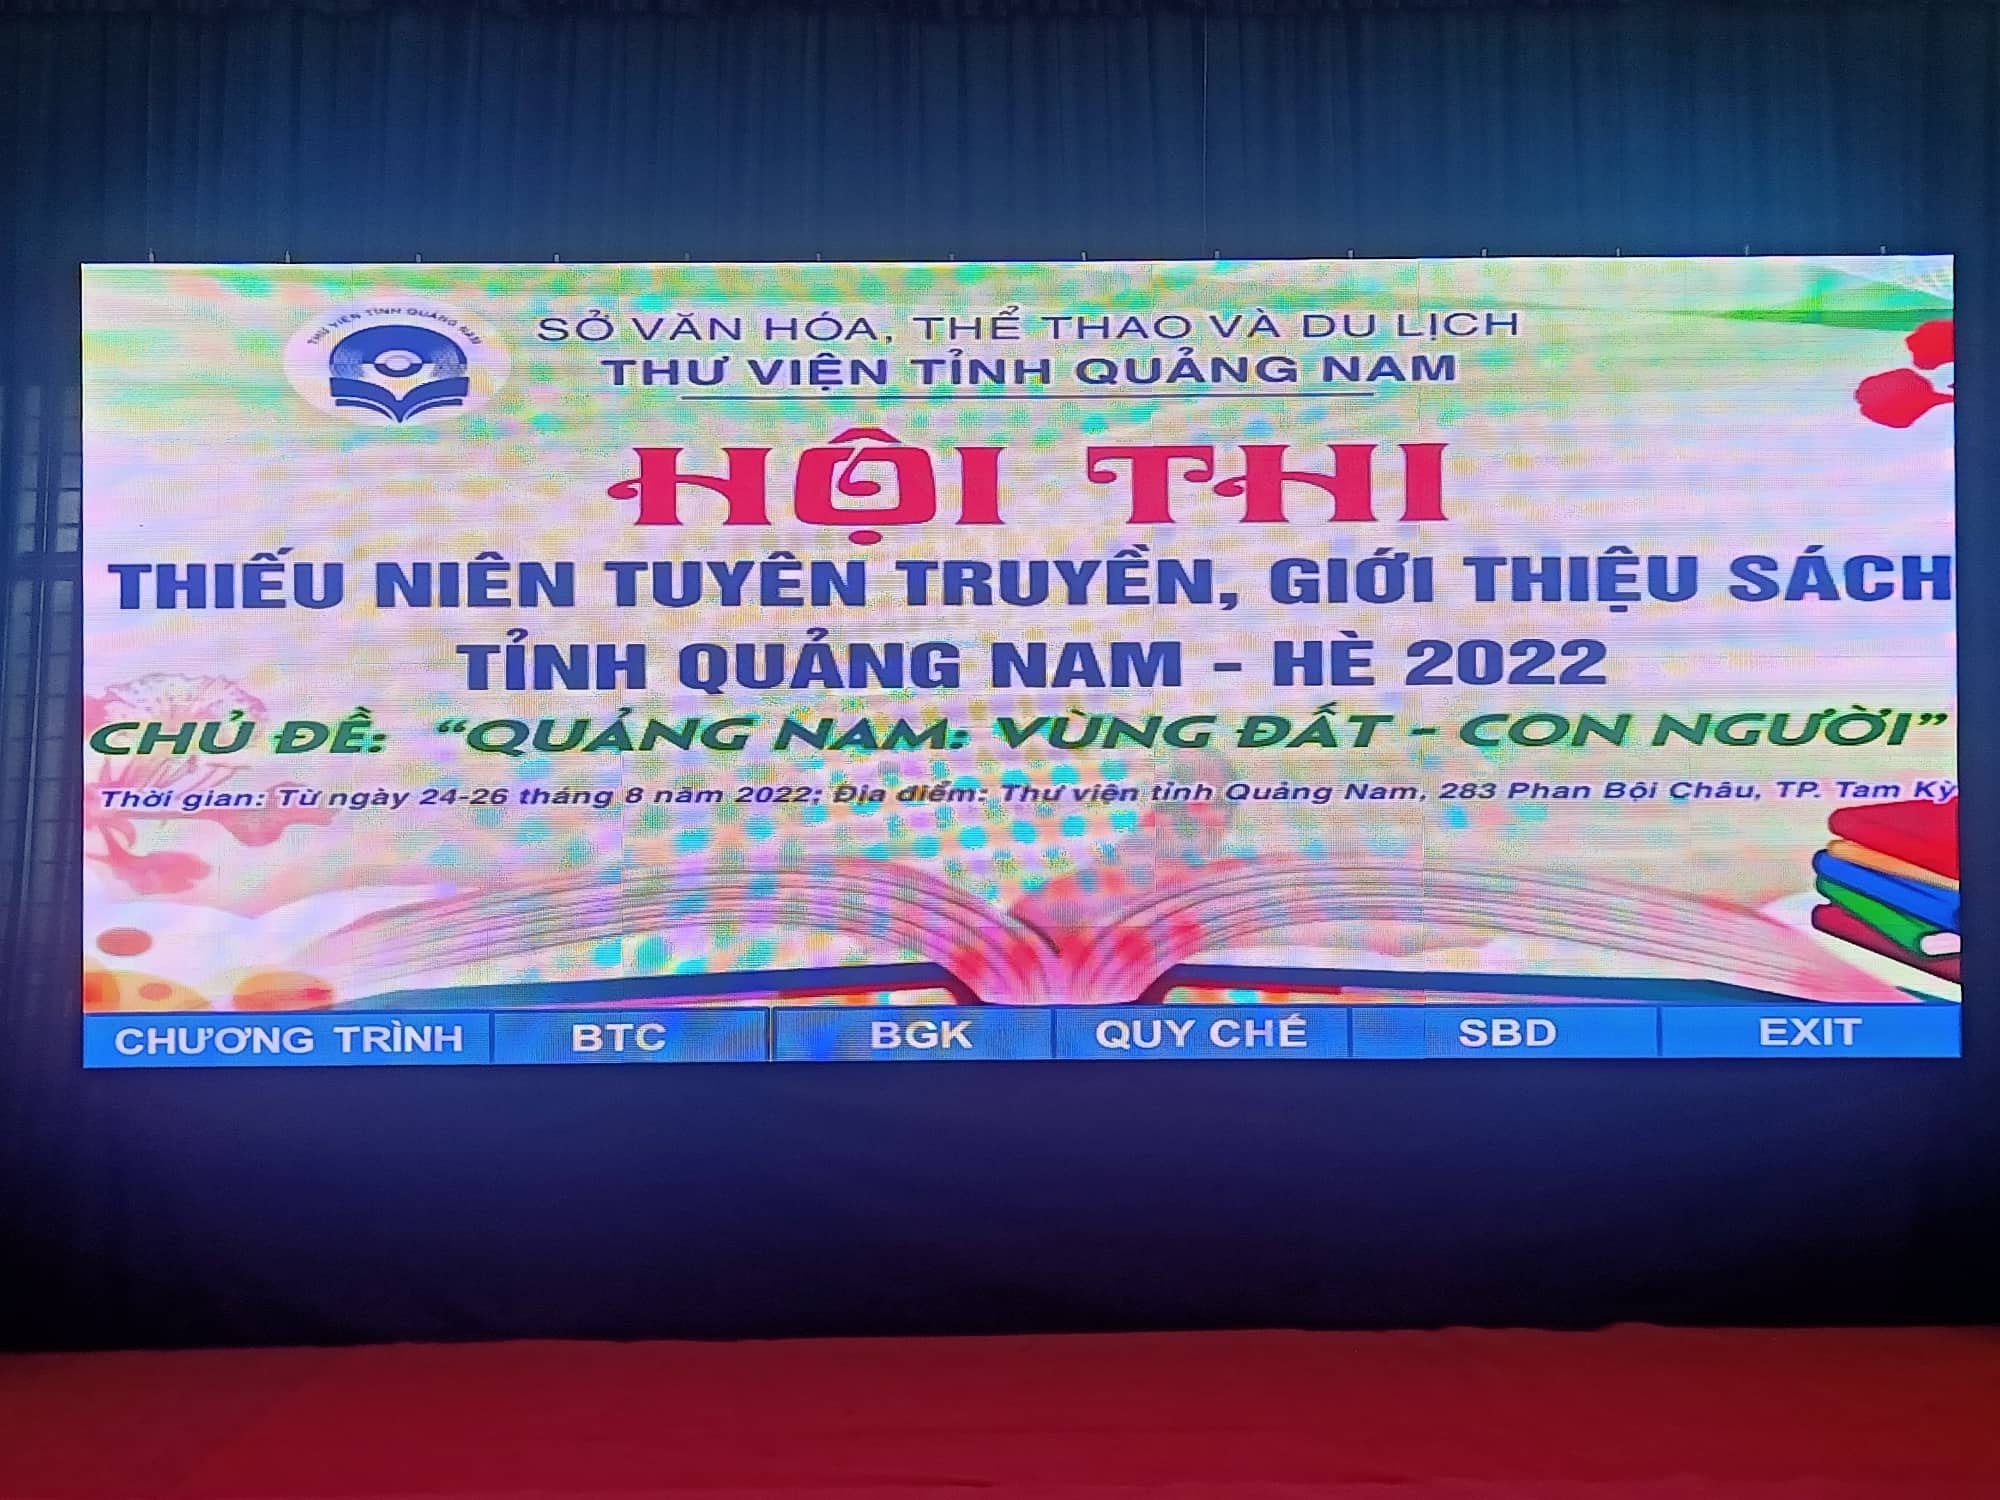 Hội thi Thiếu niên tuyên truyền, giới thiệu sách tỉnh Quảng Nam-Hè năm 2022 với chủ đề “ Quảng Nam vùng đất - Con người”.